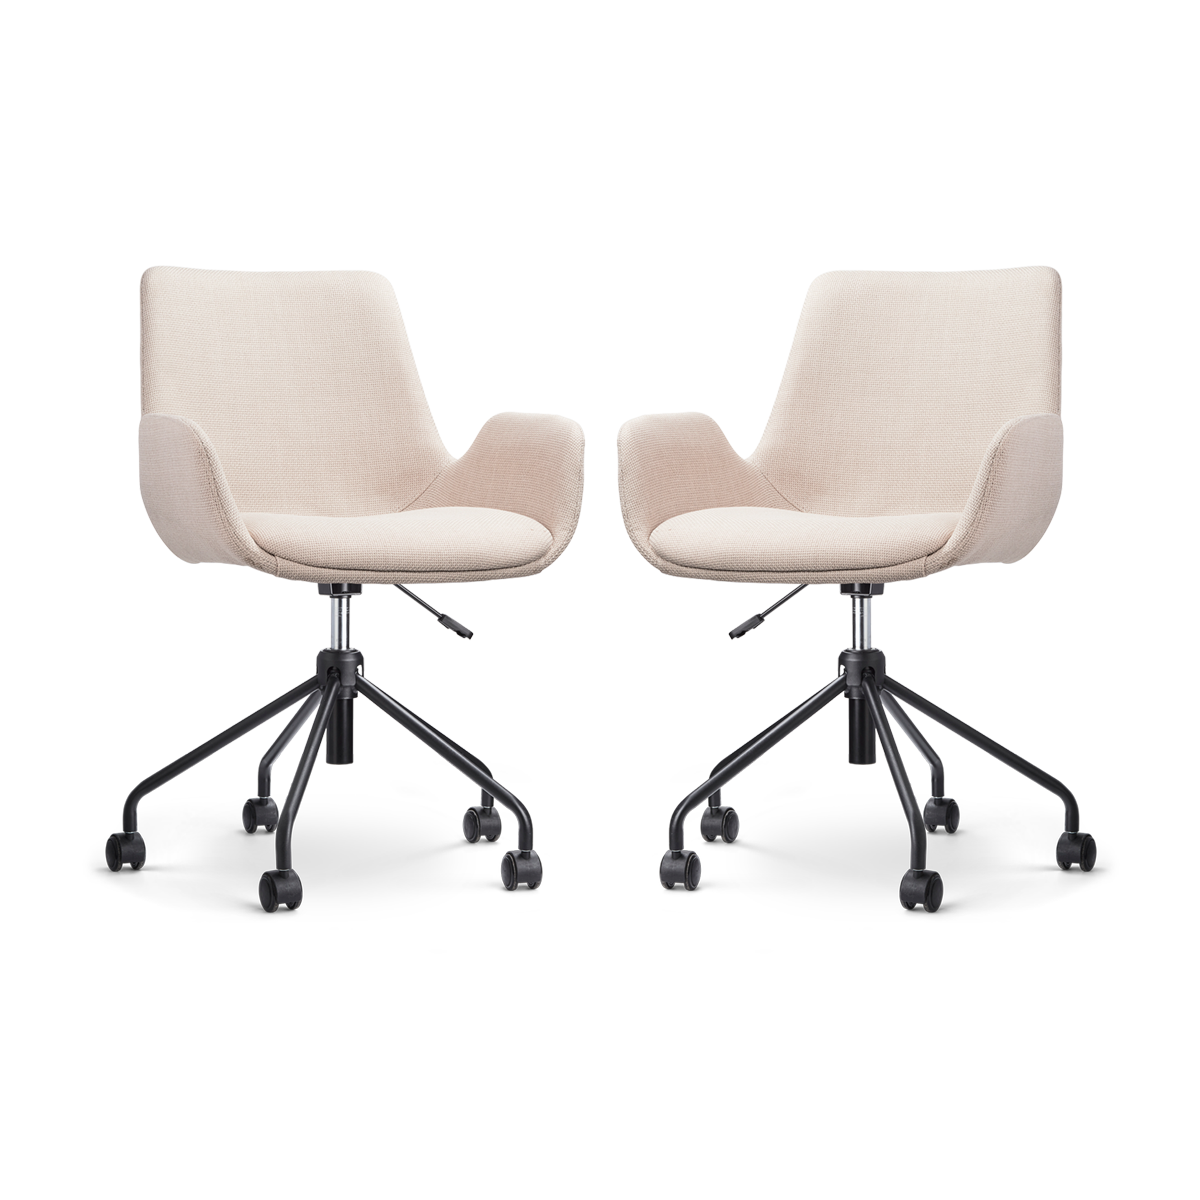 Nolon Nout-Eef bureaustoel beige - zwart onderstel - set van 2